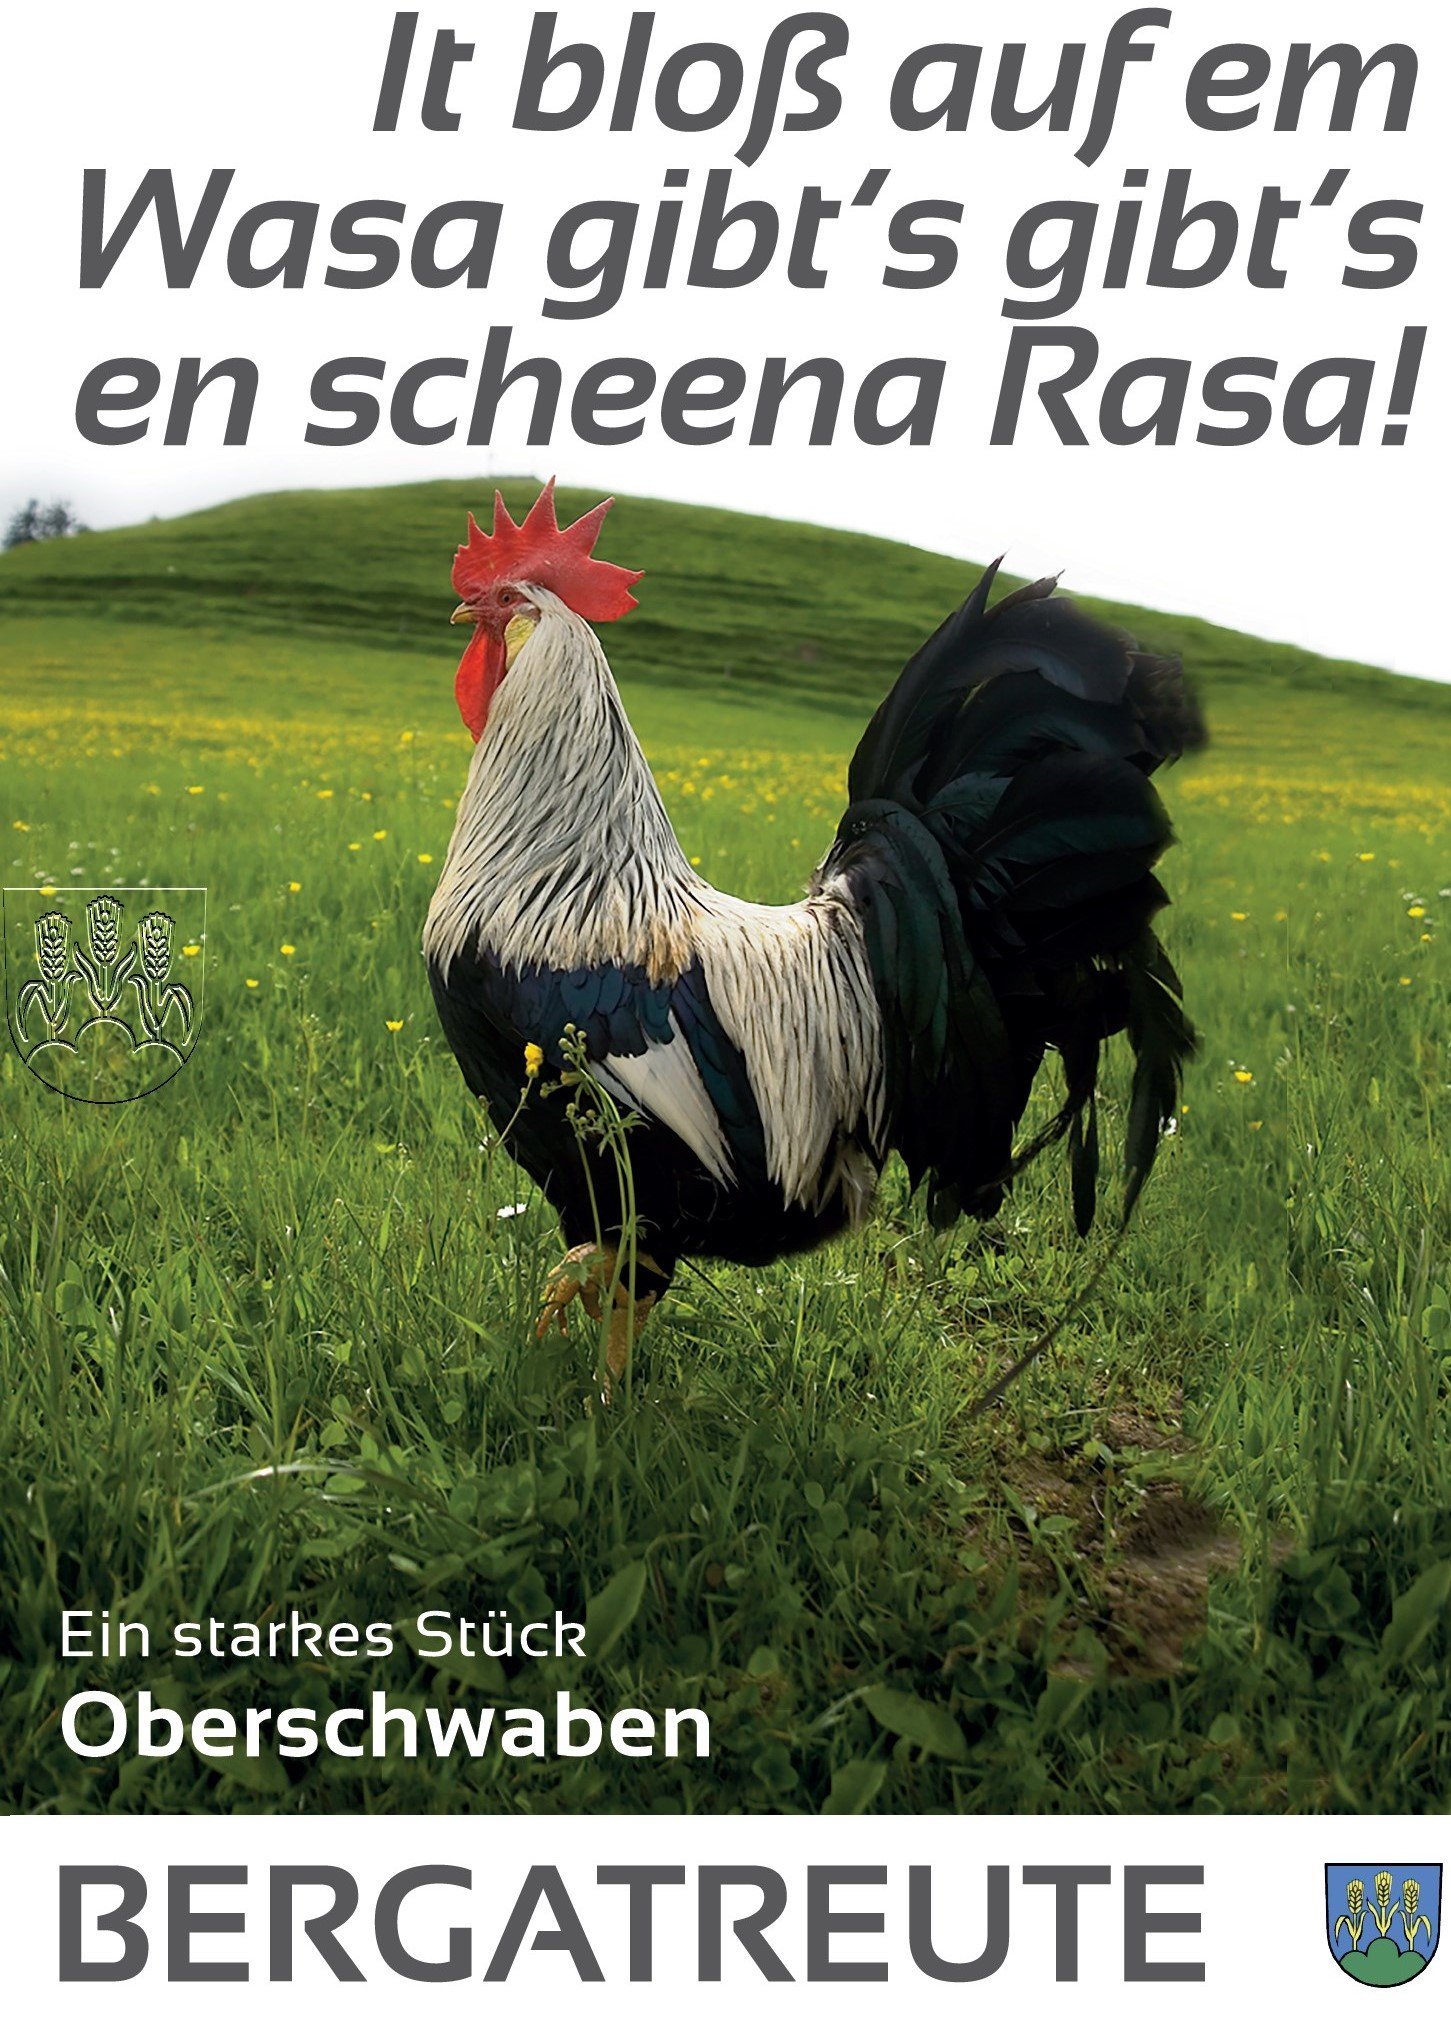  Plakat Hahn mit Spruch: It bloß auf em Wasa gibt´s en scheena Rasa! 